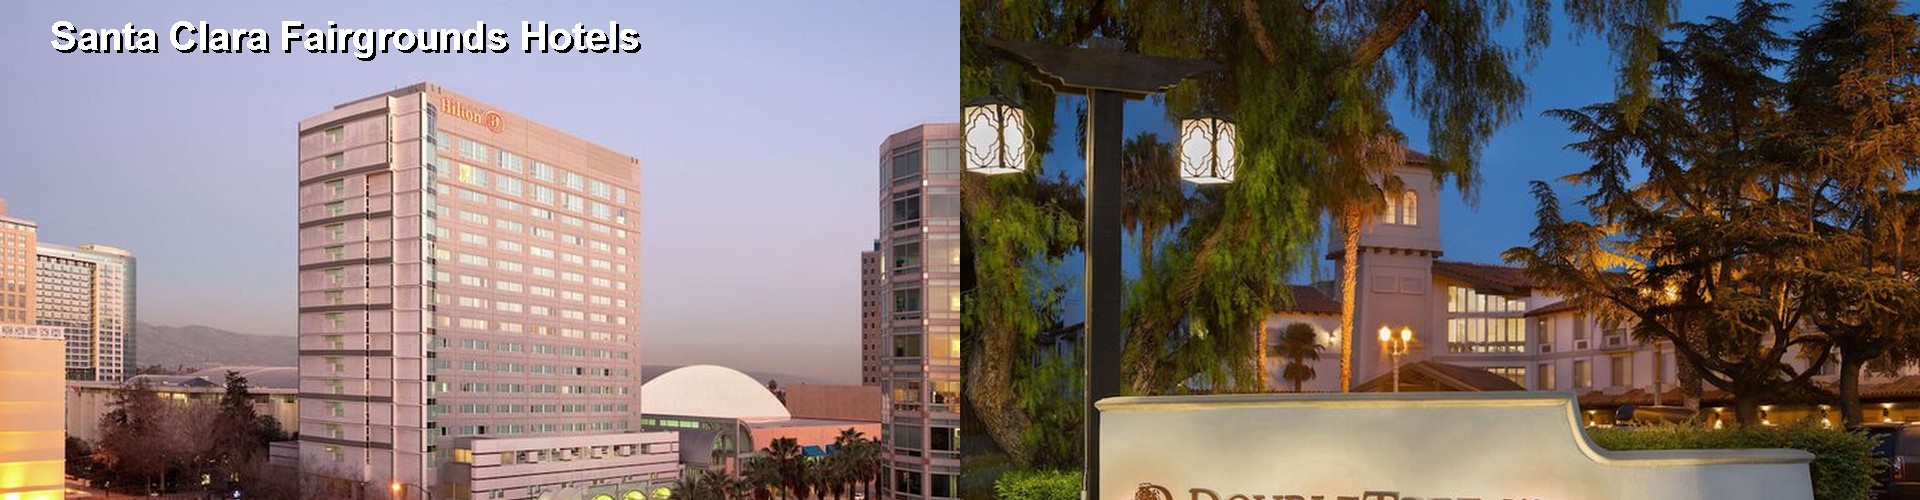 5 Best Hotels near Santa Clara Fairgrounds